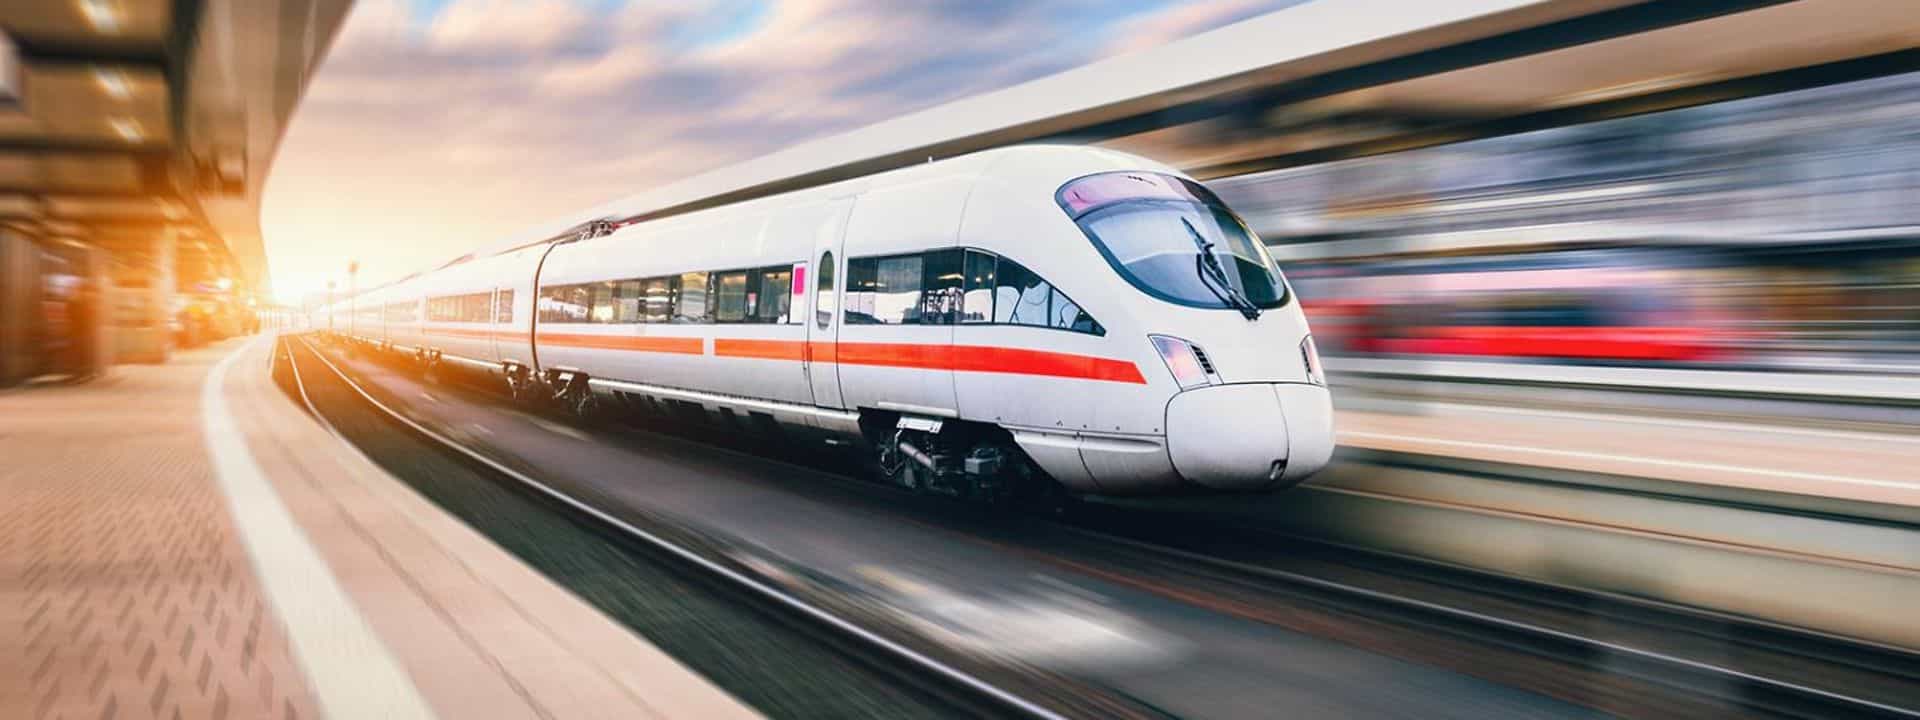 Deutsche Bahn Is Revitalizing Its Train Fleet